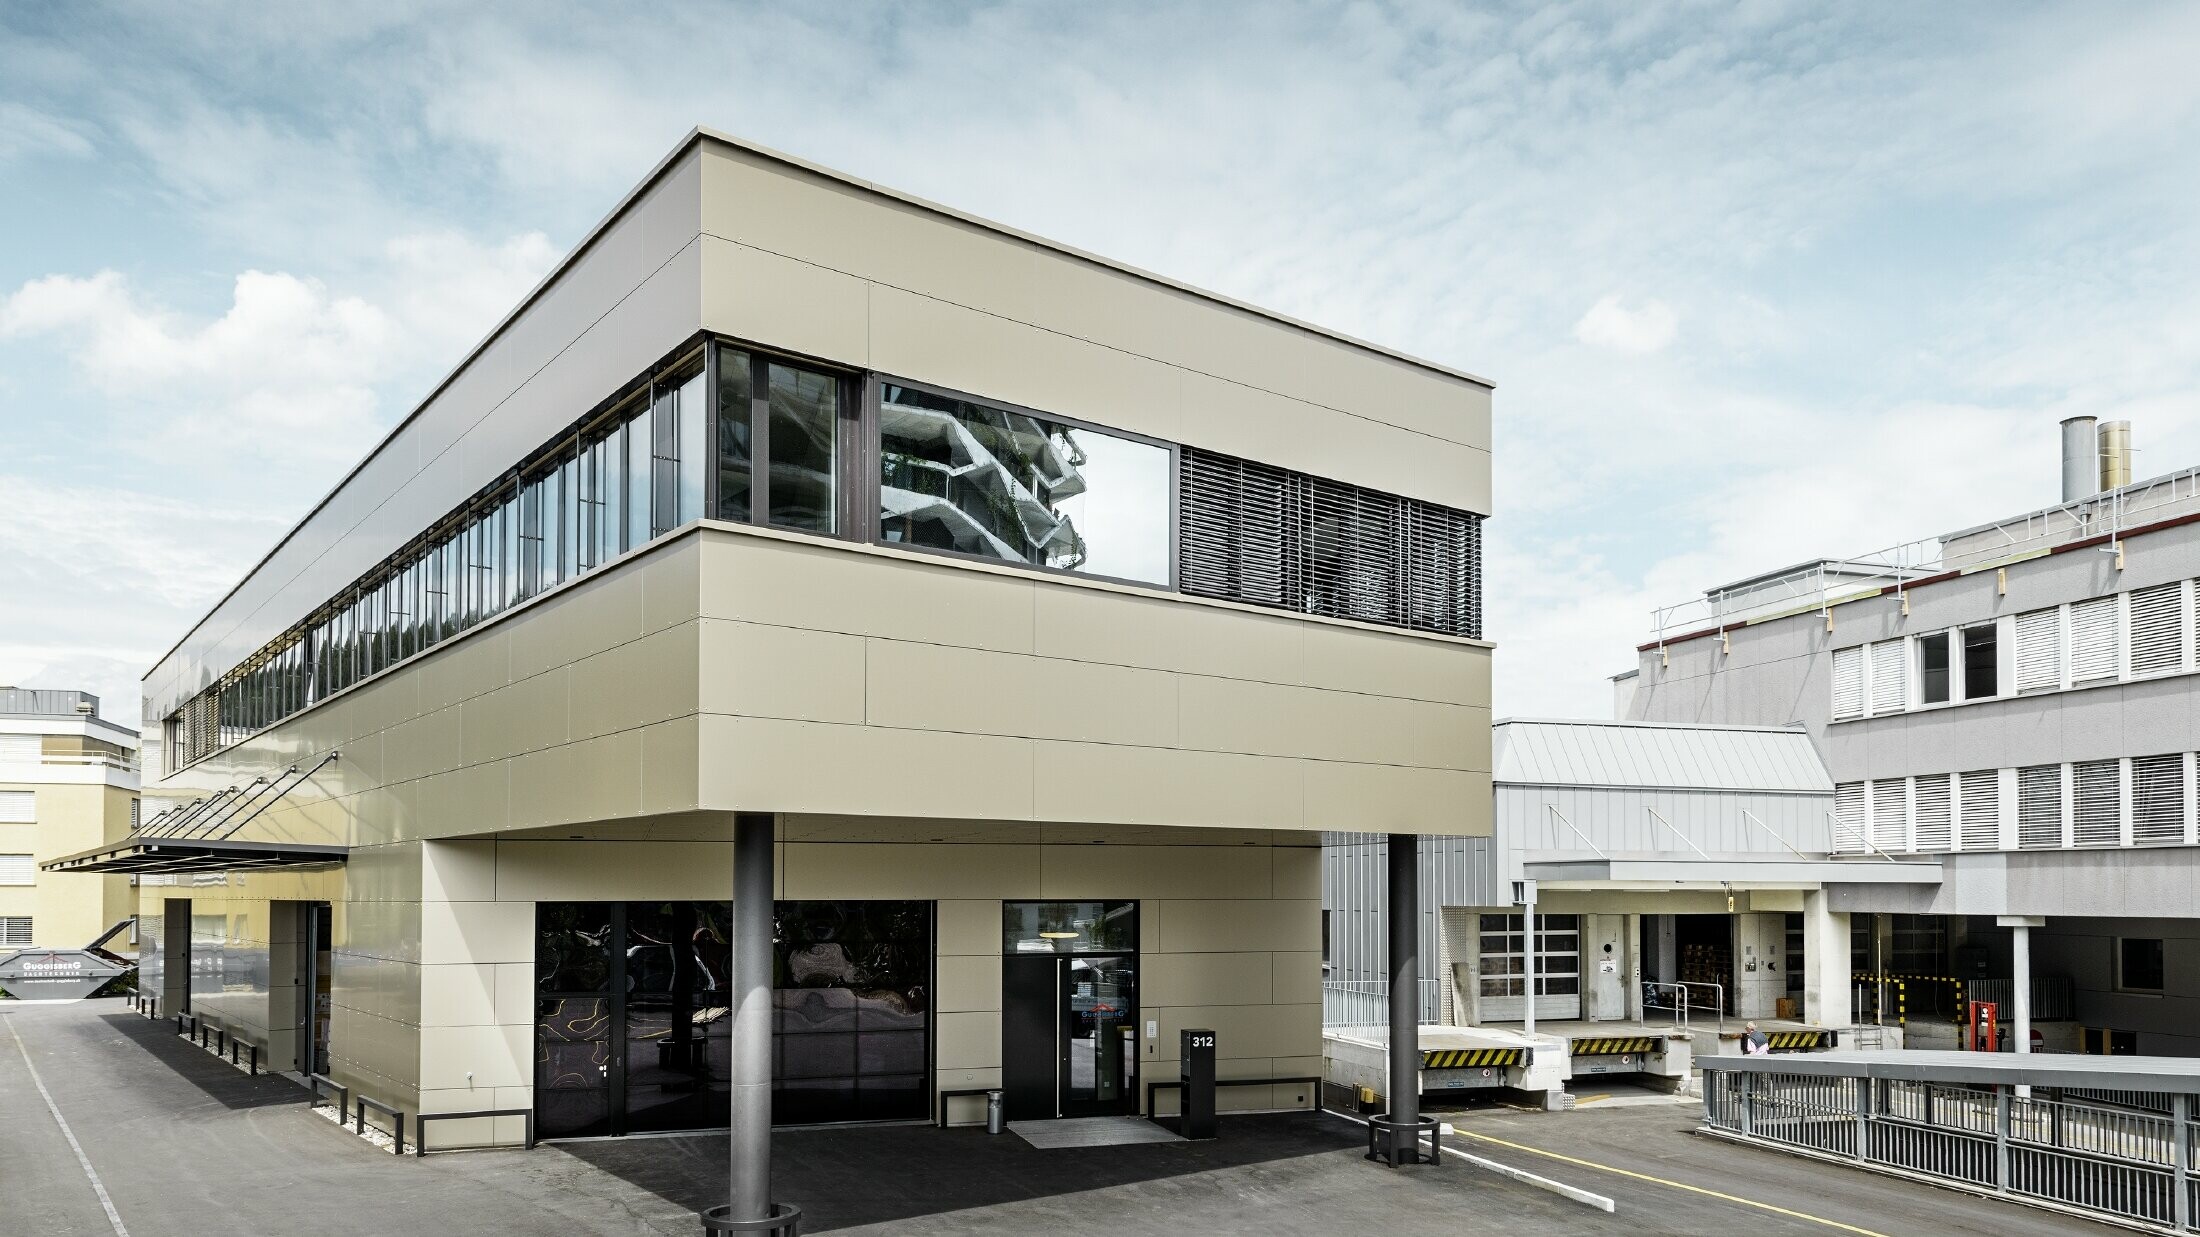 Nouveau corps de bâtiment moderne hébergeant l’atelier et les bureaux de la société Guggisbau Dachtechnik — Panneaux composites en aluminium PREFA de couleur bronze